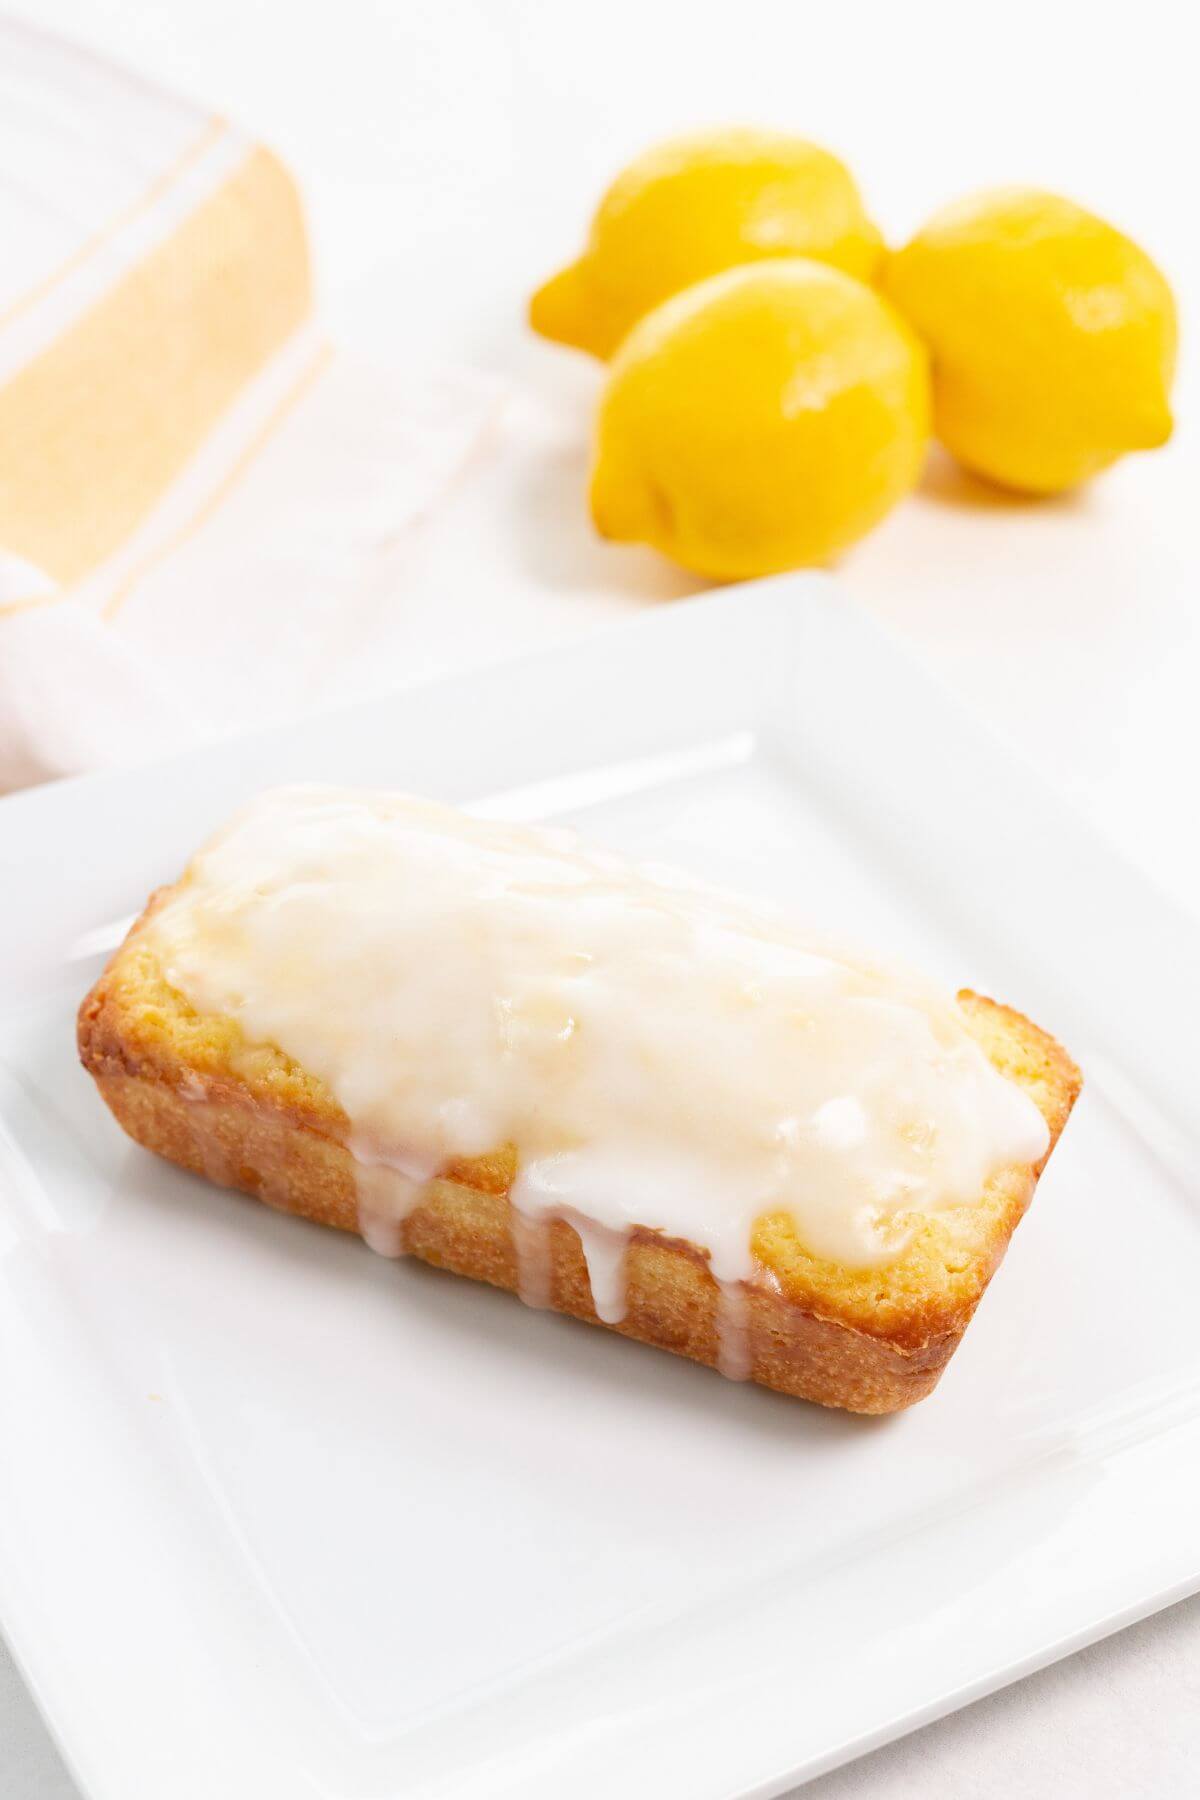 Glazed lemon loaf on square white plate.